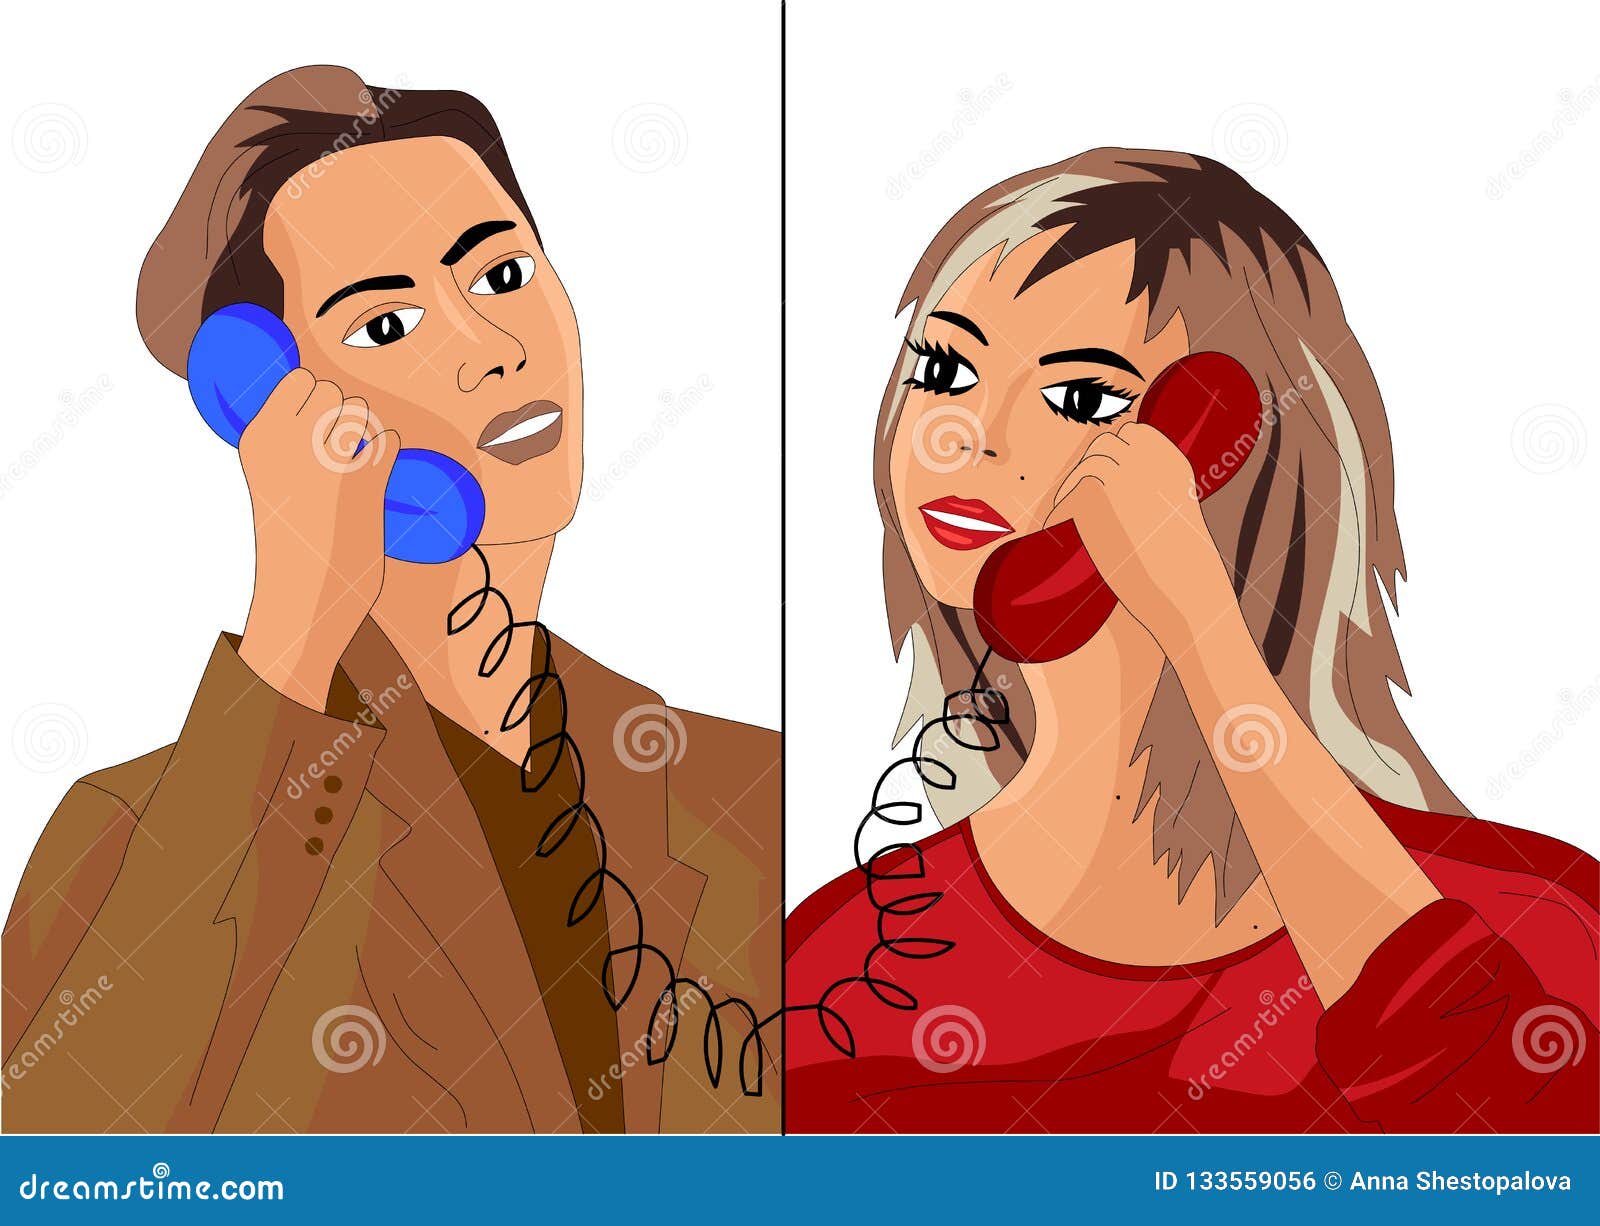 Разговор жены с мужем по телефону. Парень и девушка разговаривают по телефону. Два человека разговаривают по телефону. Разговор по телефону иллюстрация. Телефонный разговор 2 человека.